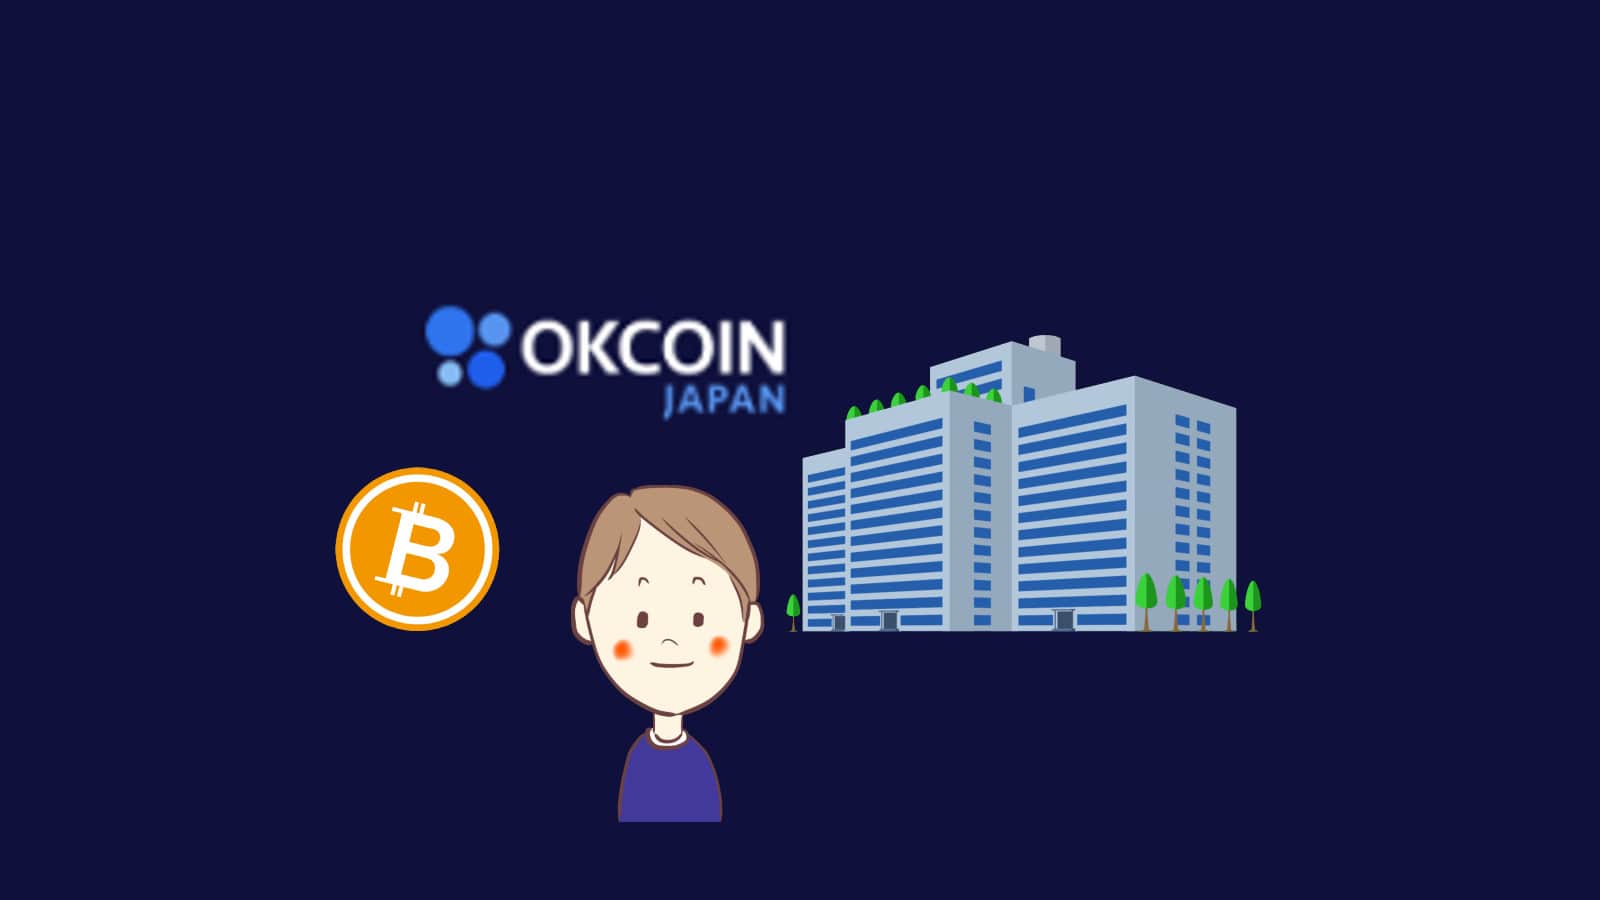 OKコインのロゴと人物とビルと仮想通貨のイラスト